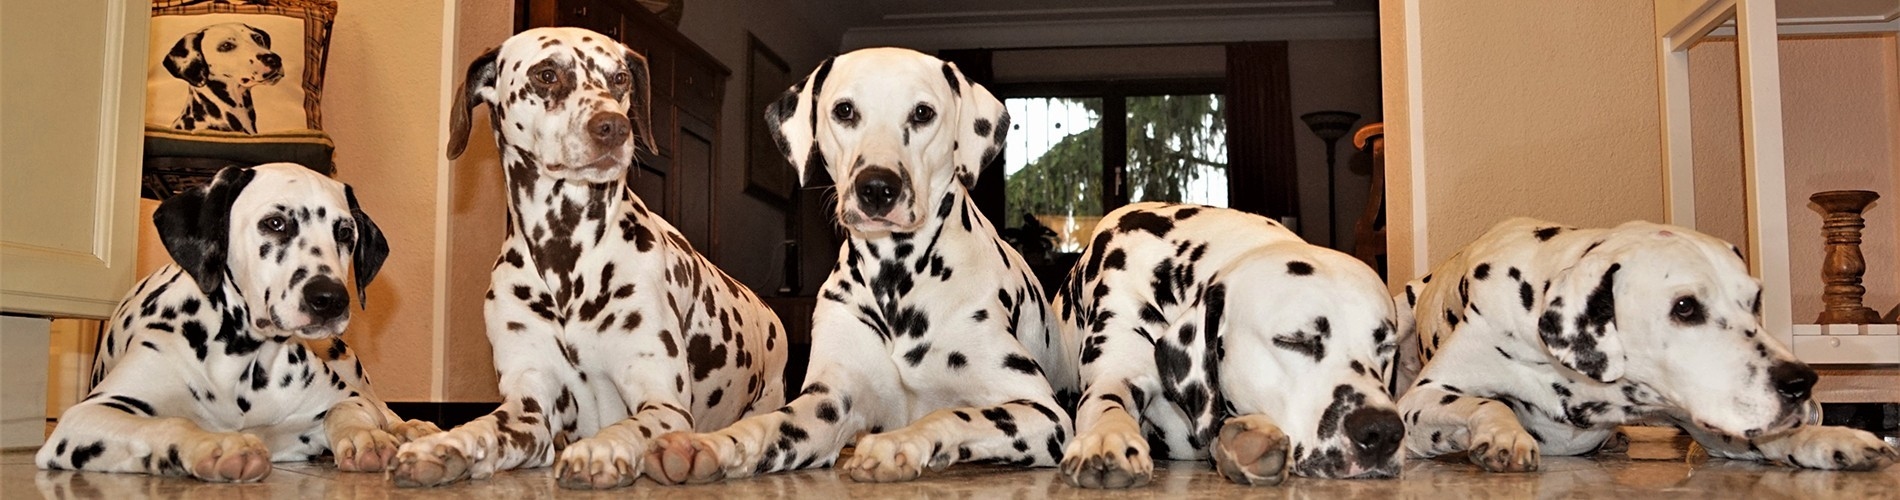 Hundiversum DogCare GmbH - Schadegg Dalmatians im Hundiversum